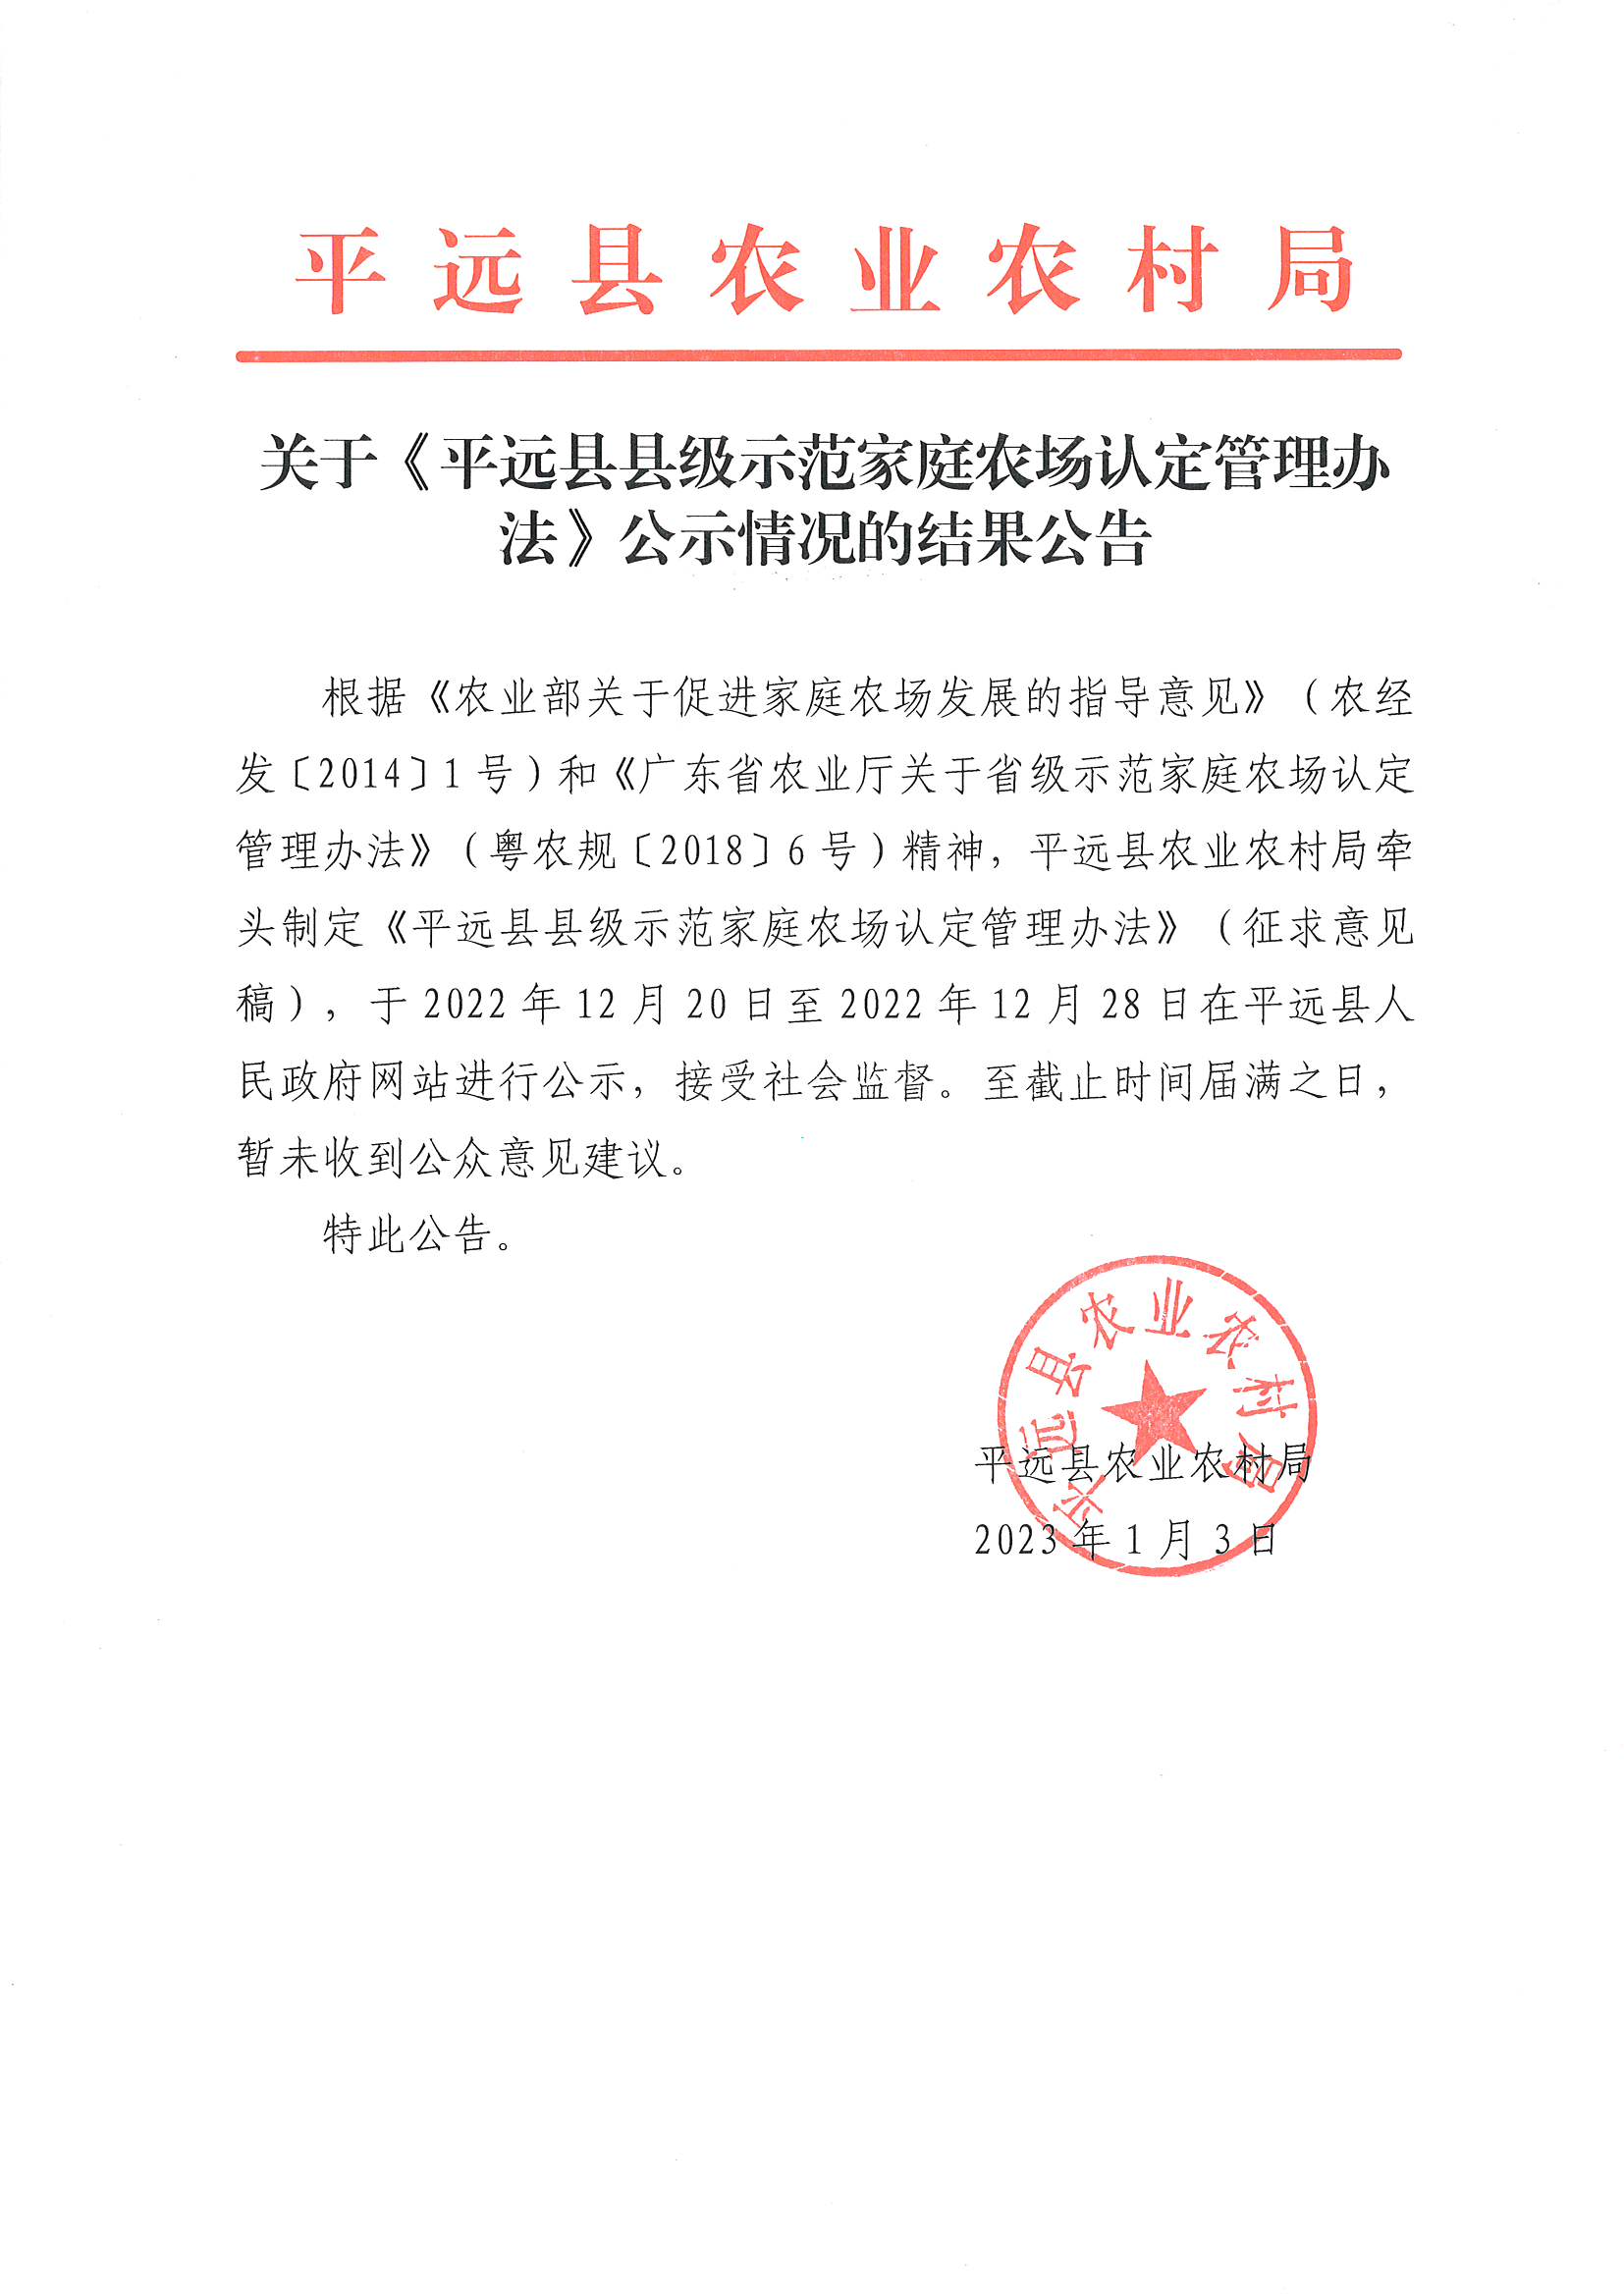 关平远县县级示范家庭农场认定管理办法公示情况的结果公告.jpg